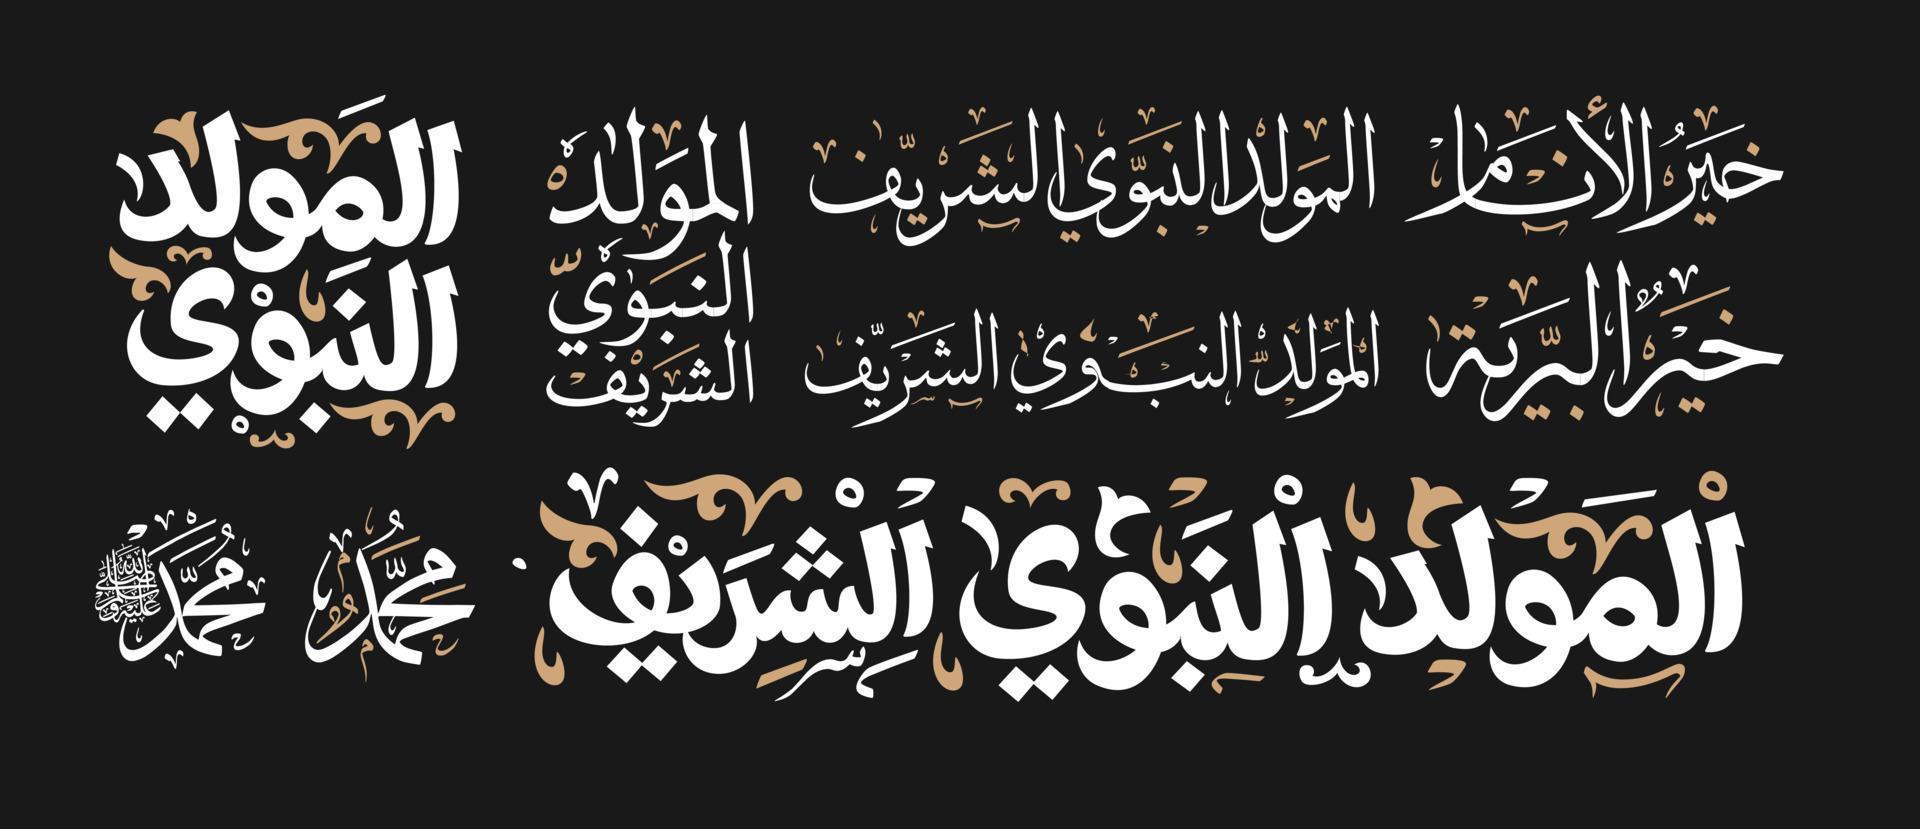 mawlid al-nabi al-sharif aniversário do profeta islâmico muhammad vetor de cartão, caligrafia árabe mawlid un nabi, cartão de al mawlid al nabawi ilustração vetorial